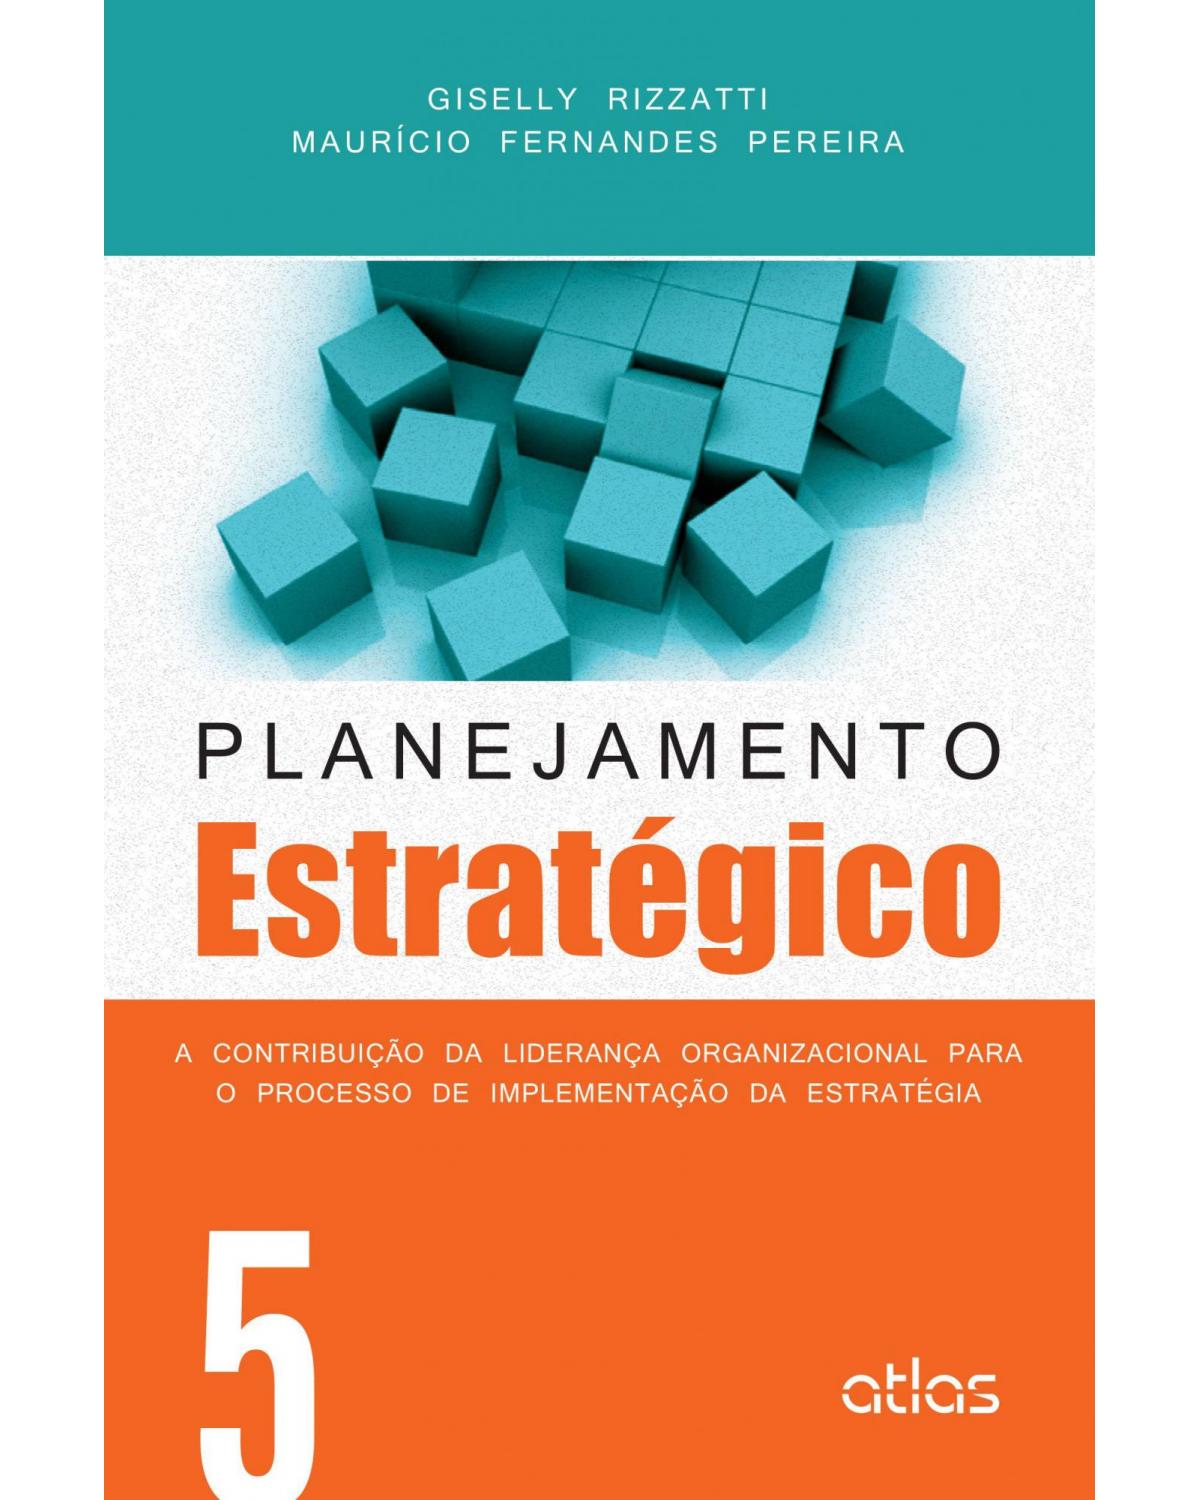 Planejamento estratégico - Volume 5: A contribuição da liderança organizacional para o processo de implementação da estratégia - 1ª Edição | 2015